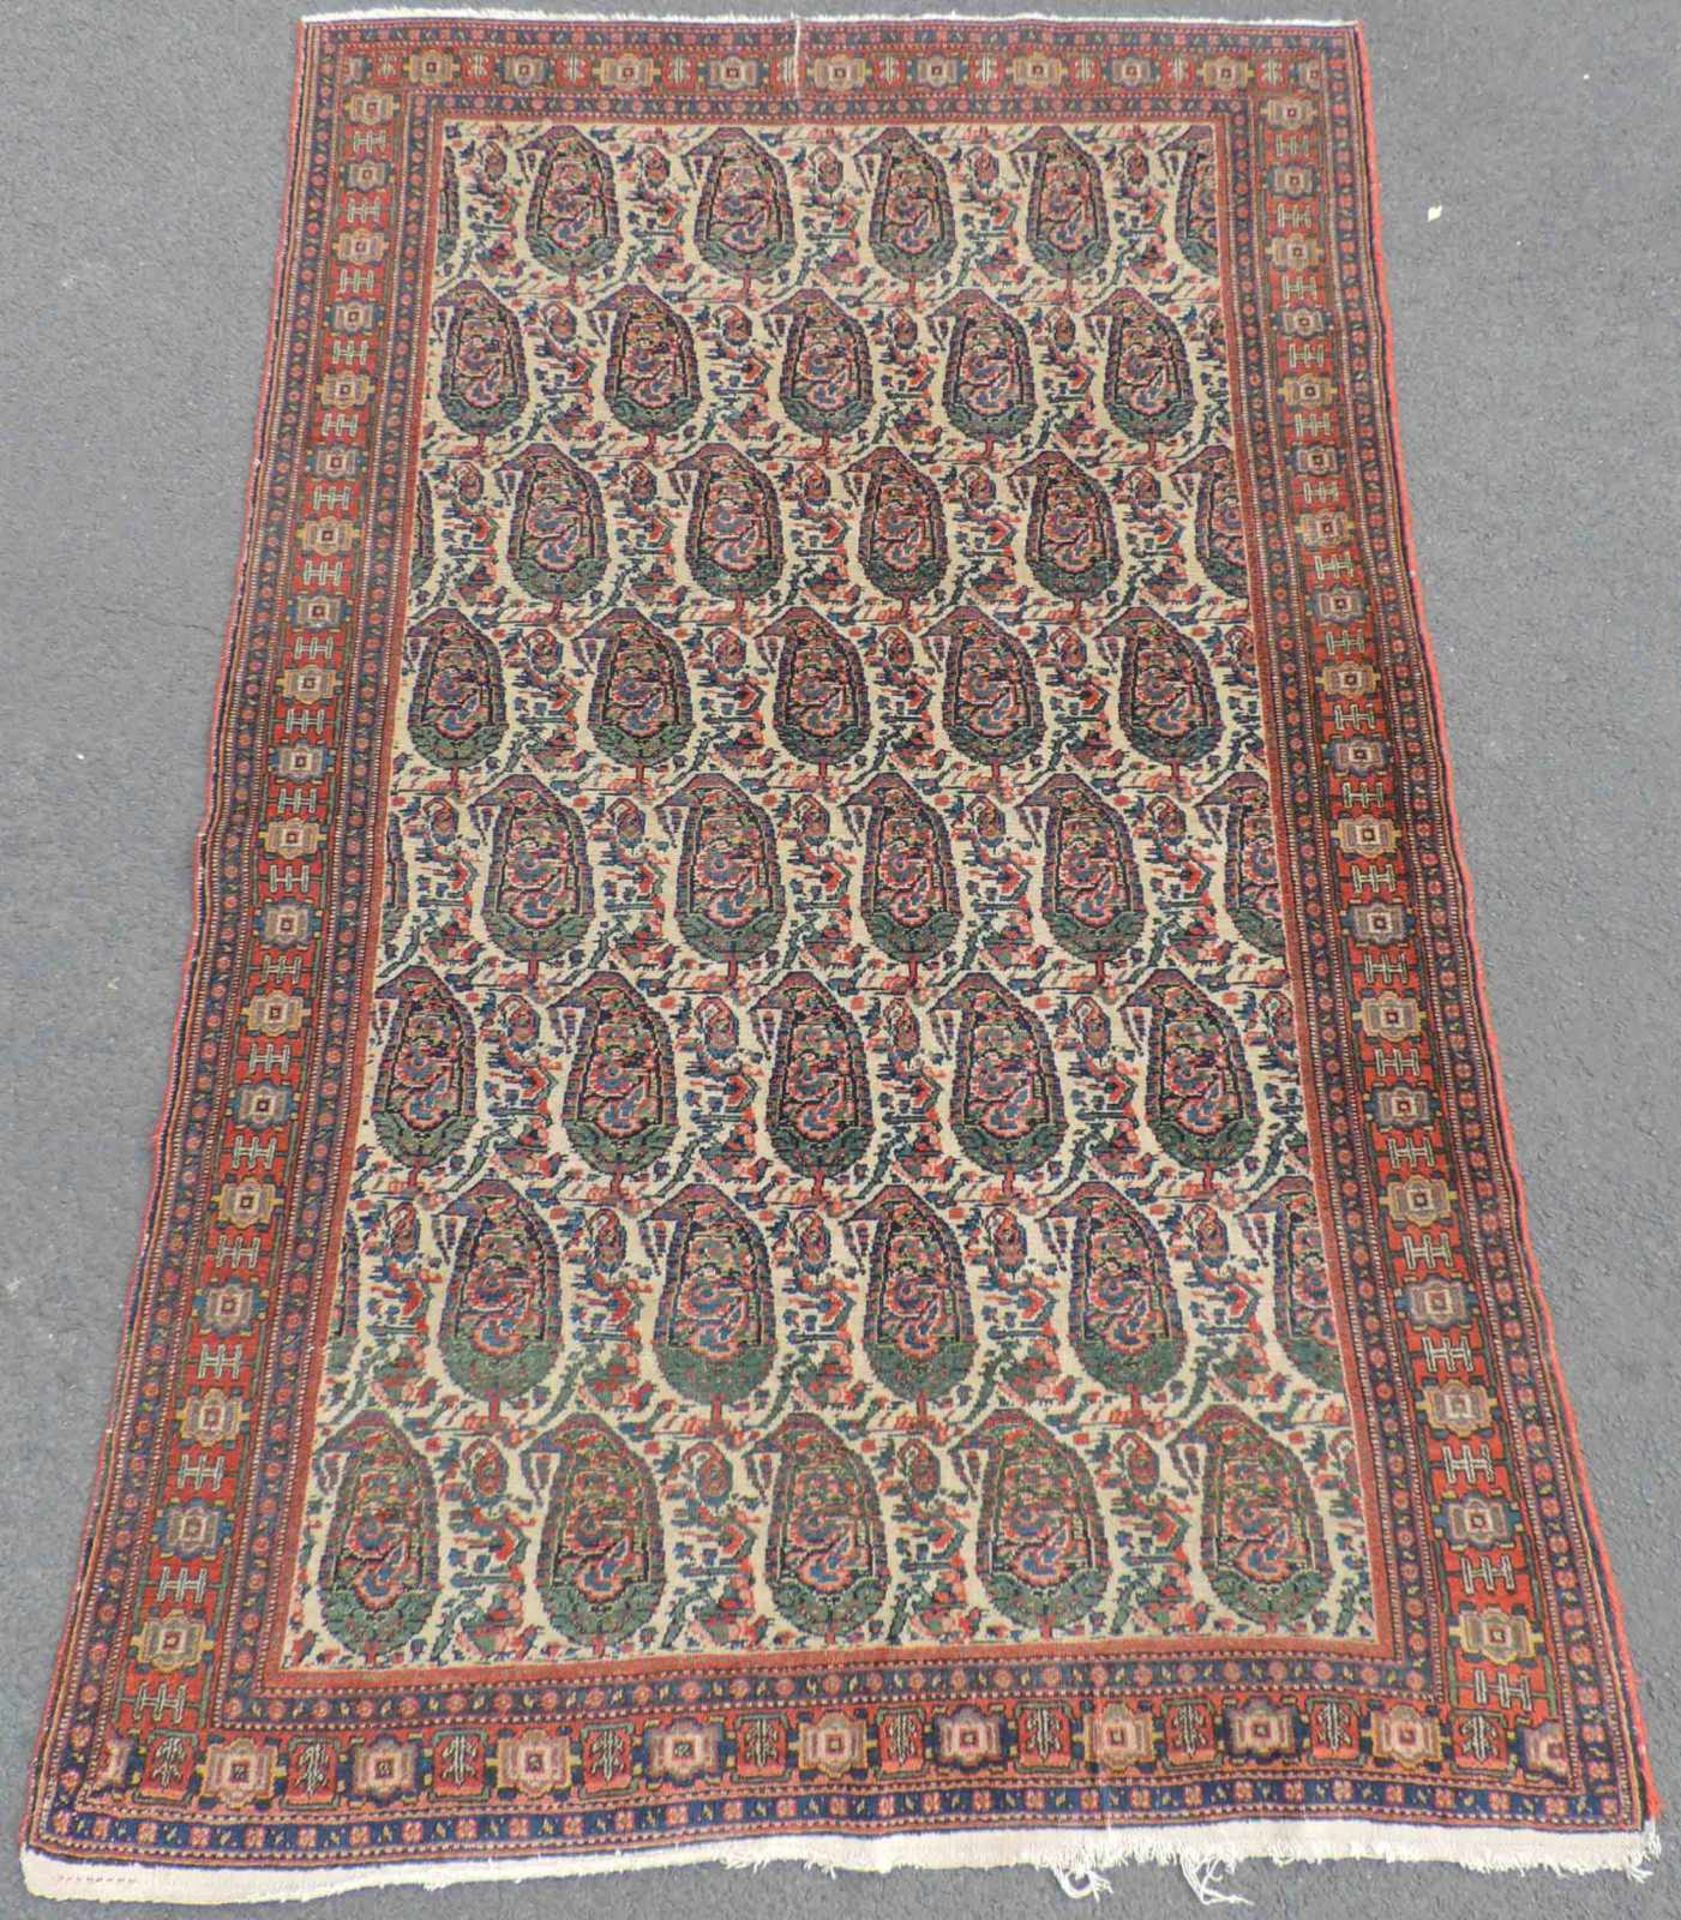 Senneh Dorfteppich. Iran. Antik. Um 1900. 196 cm x 136 cm. Handgeknüpft. Wolle auf Baumwolle. Senneh